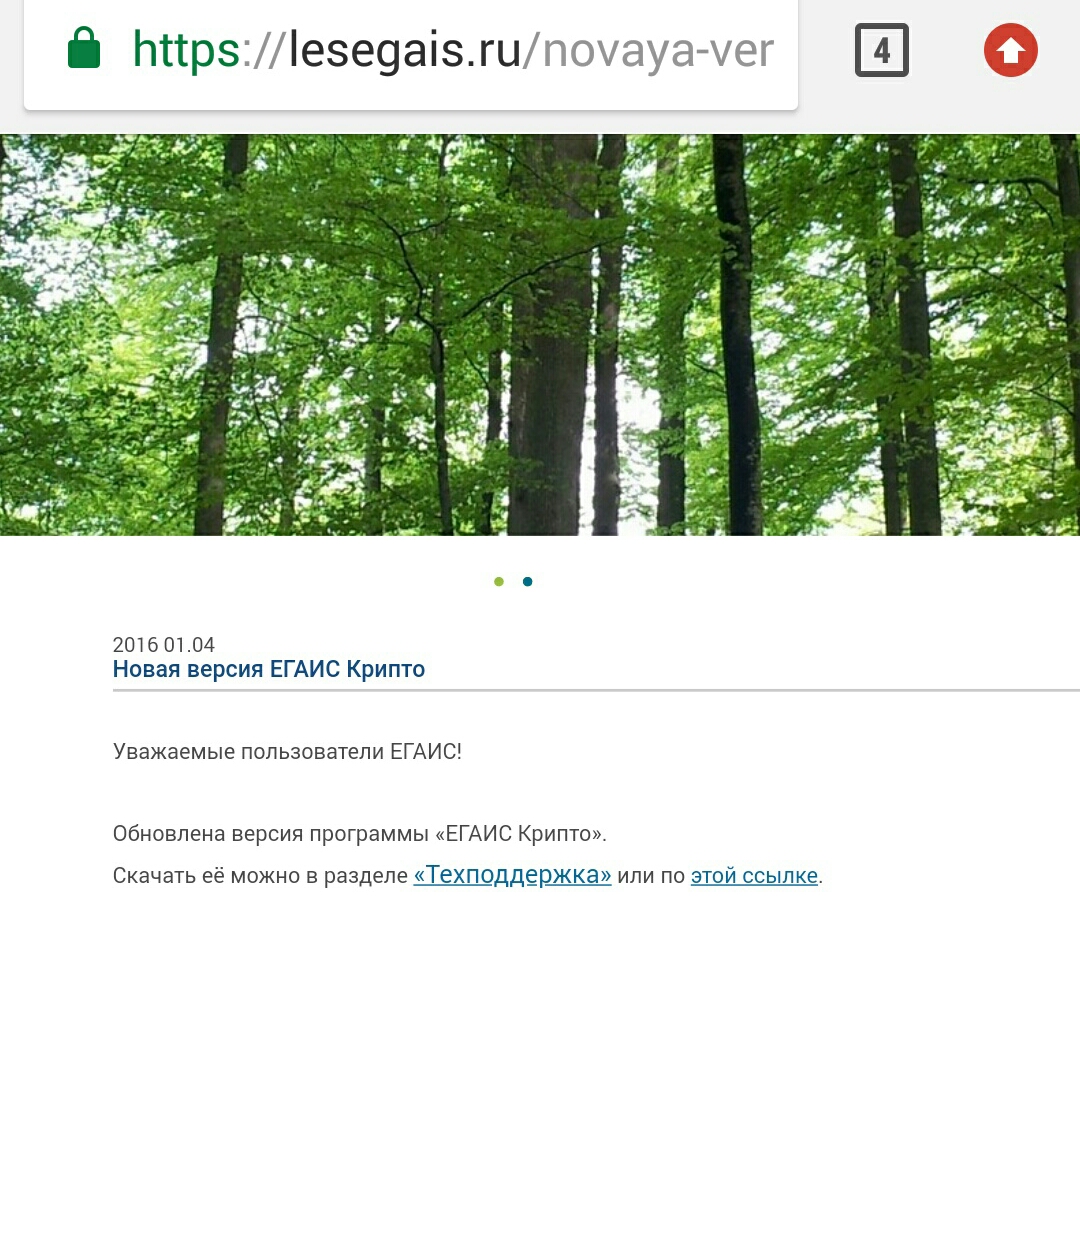 Не работает ЕГАИС лес - бесплатная служба поддержки в системе